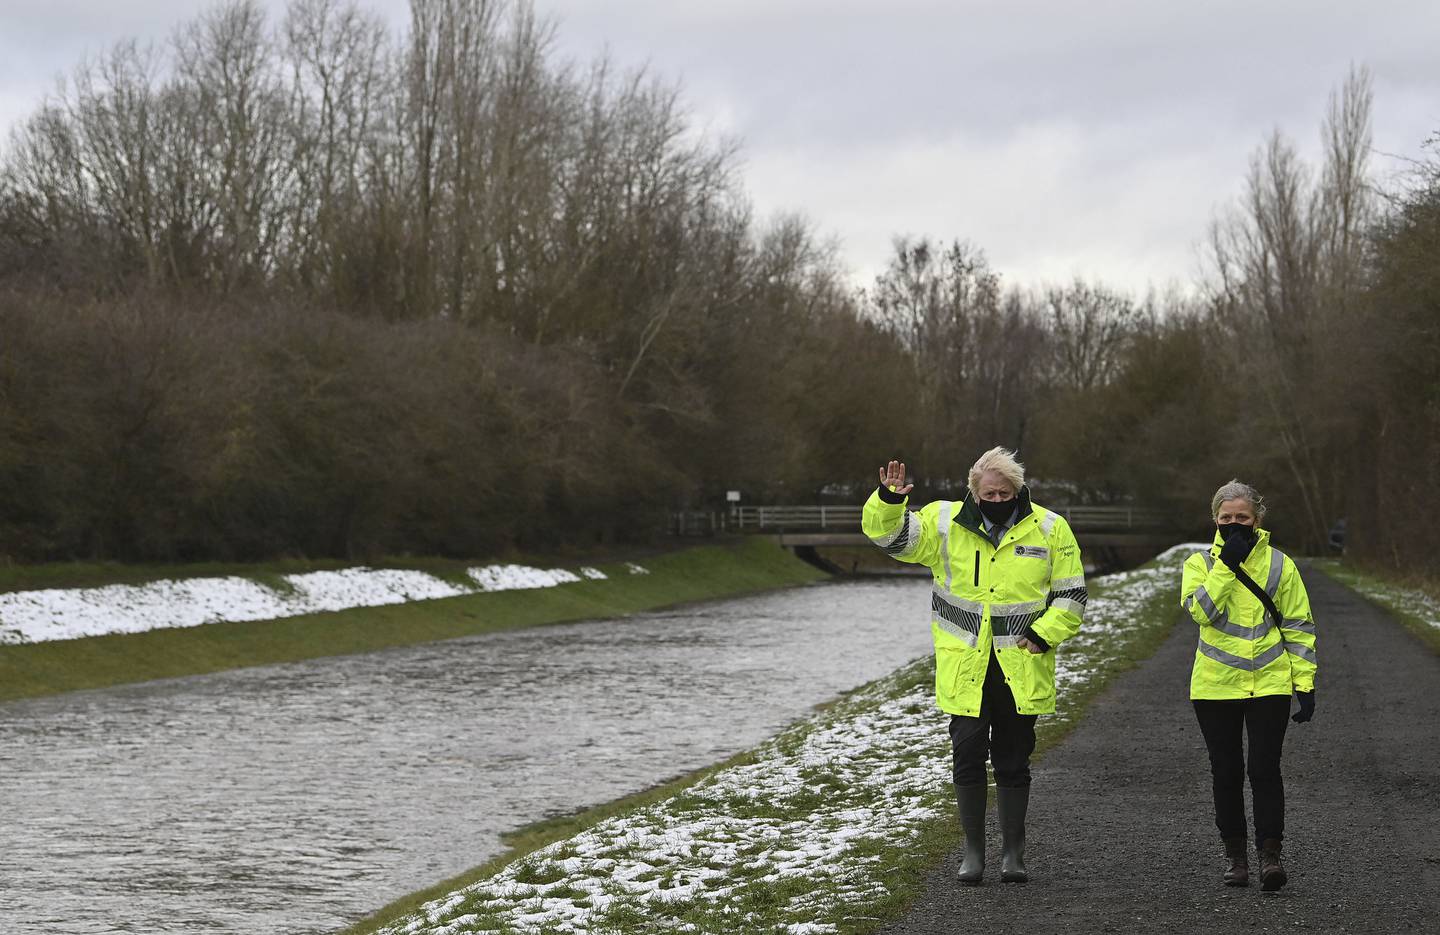 Daværende statsminister Boris Johnson sjekker flomsikringen ved en elvebredd i januar 2021. Etter Brexit innførte han dessuten regler som lar britiske vannverk pumpe kloakken rett i elva så lenge de mener det kan bli storm – også om stormen aldri kommer. Resultatet er forurensede vannveier i hele Storbritannia.